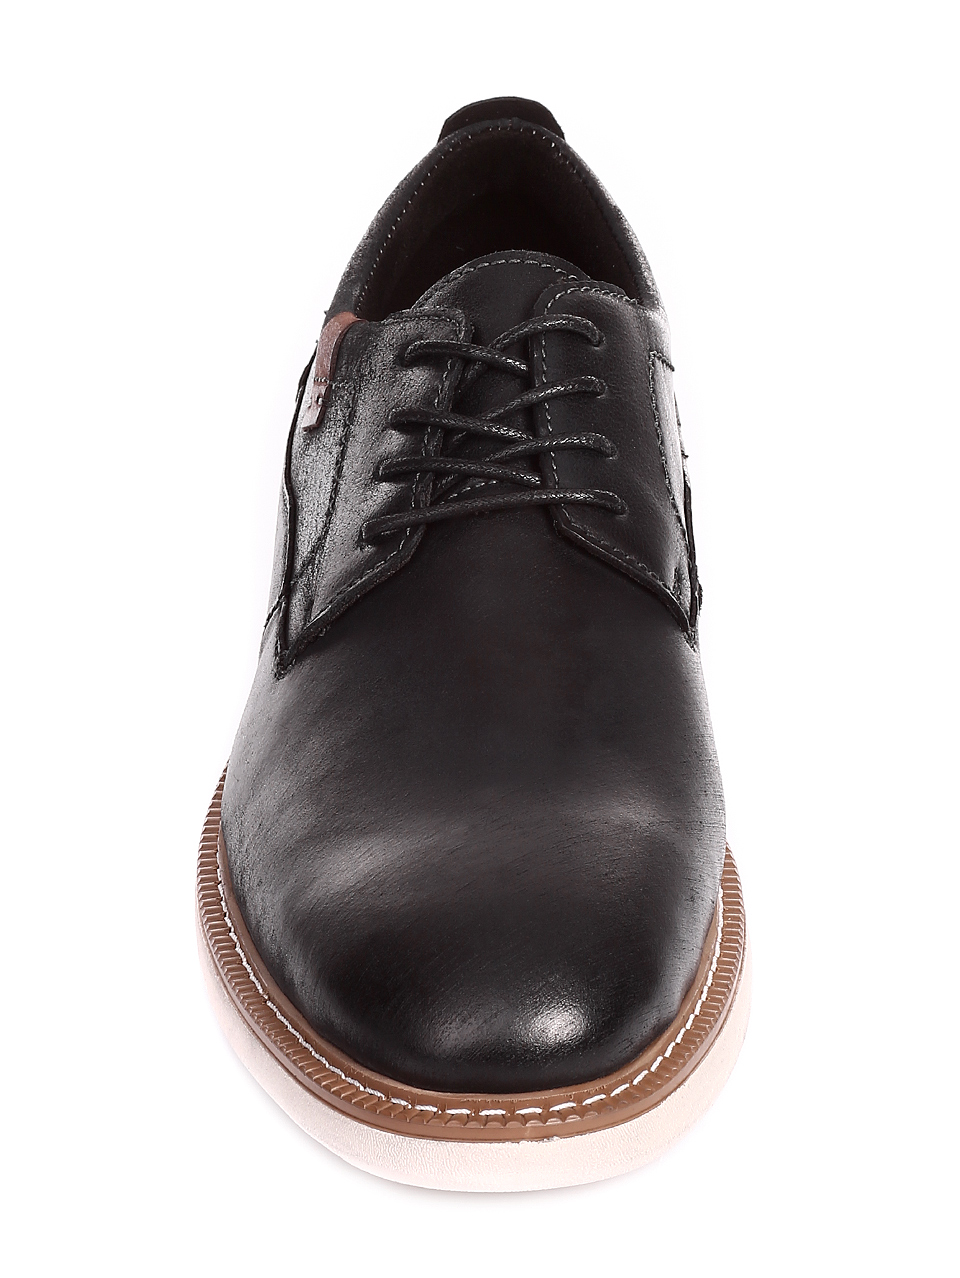 Ежедневни мъжки обувки от естествена кожа 7N-20239 black